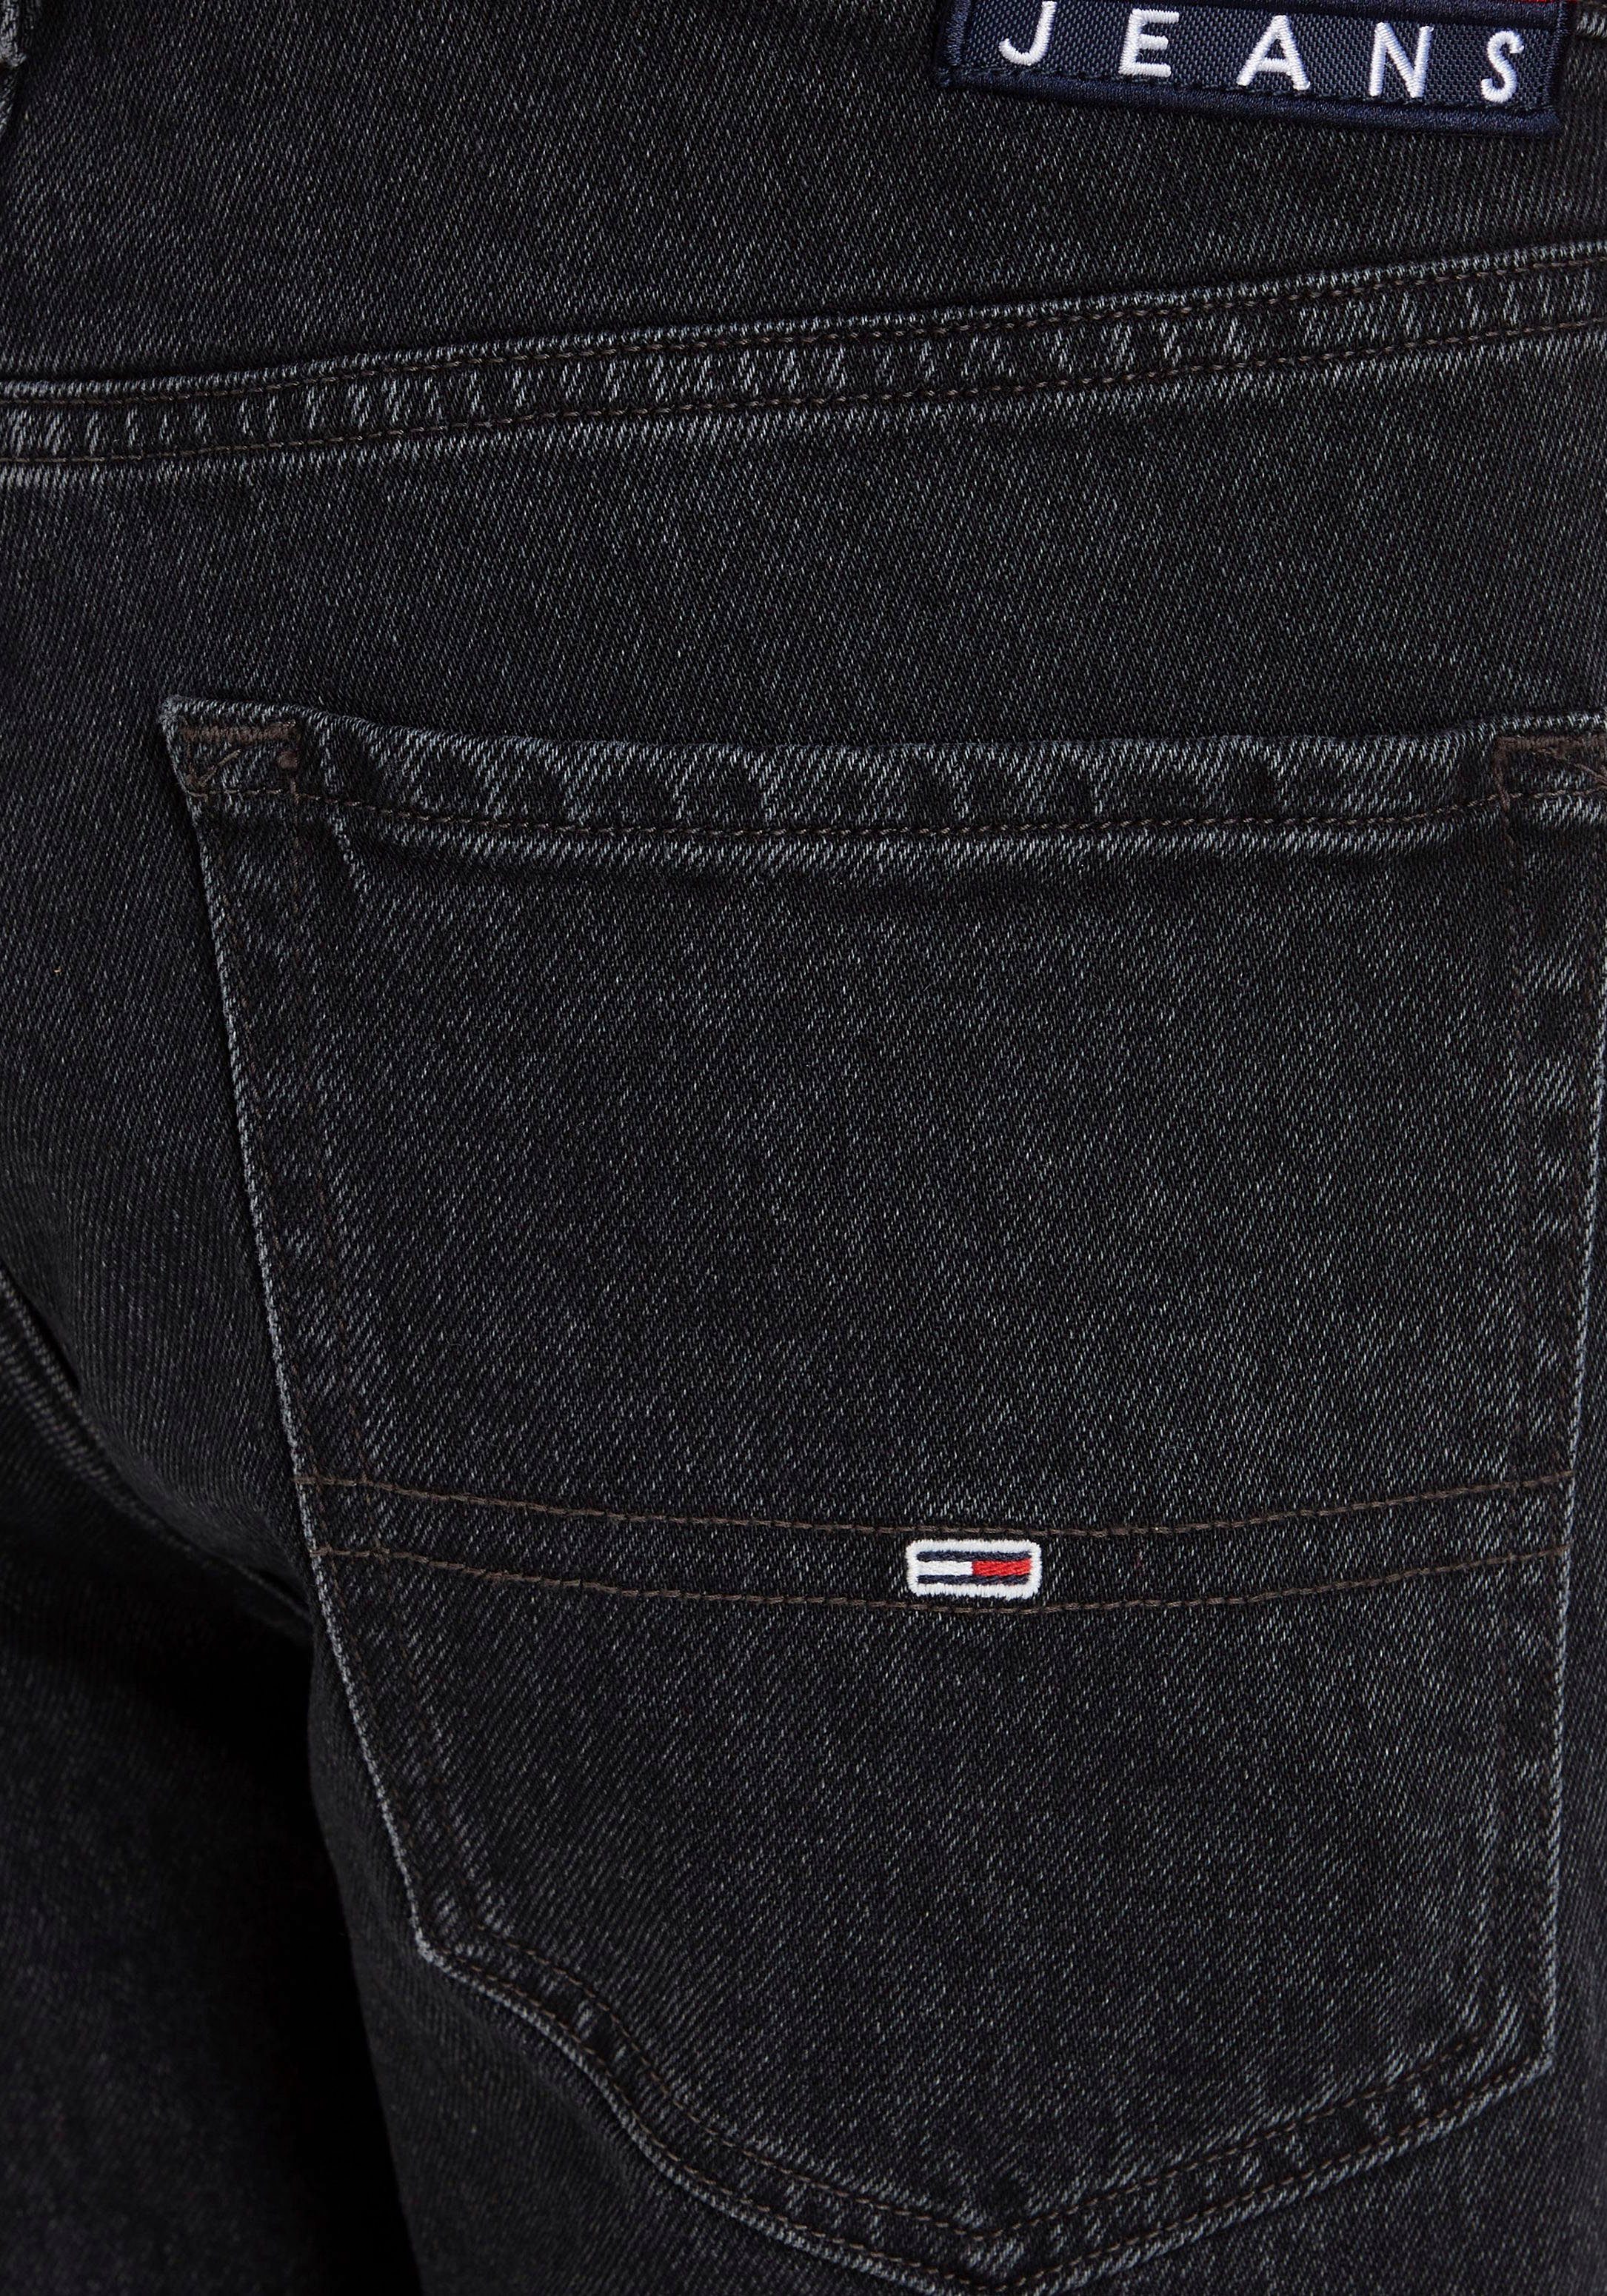 Tommy Jeans 5-Pocket-Jeans SLIM Denim Y SCANTON Black